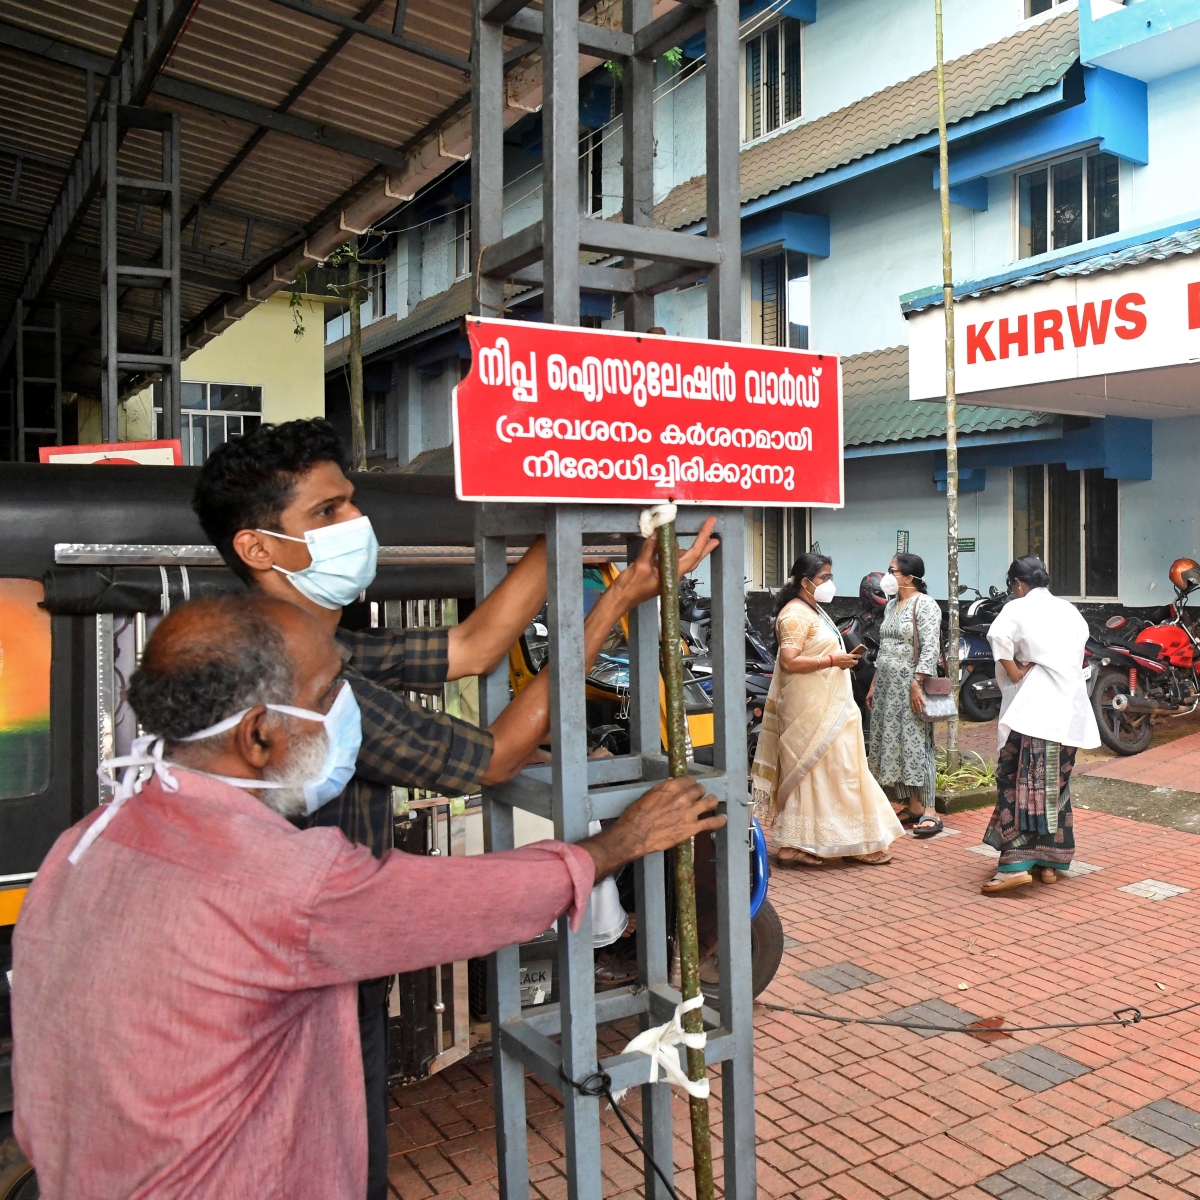  O surto do vírus mortal Nipah causou o fechamento de algumas escolas, escritórios e transportes públicos ao longo desta semana no estado de Kerala, no sul da Índia. 